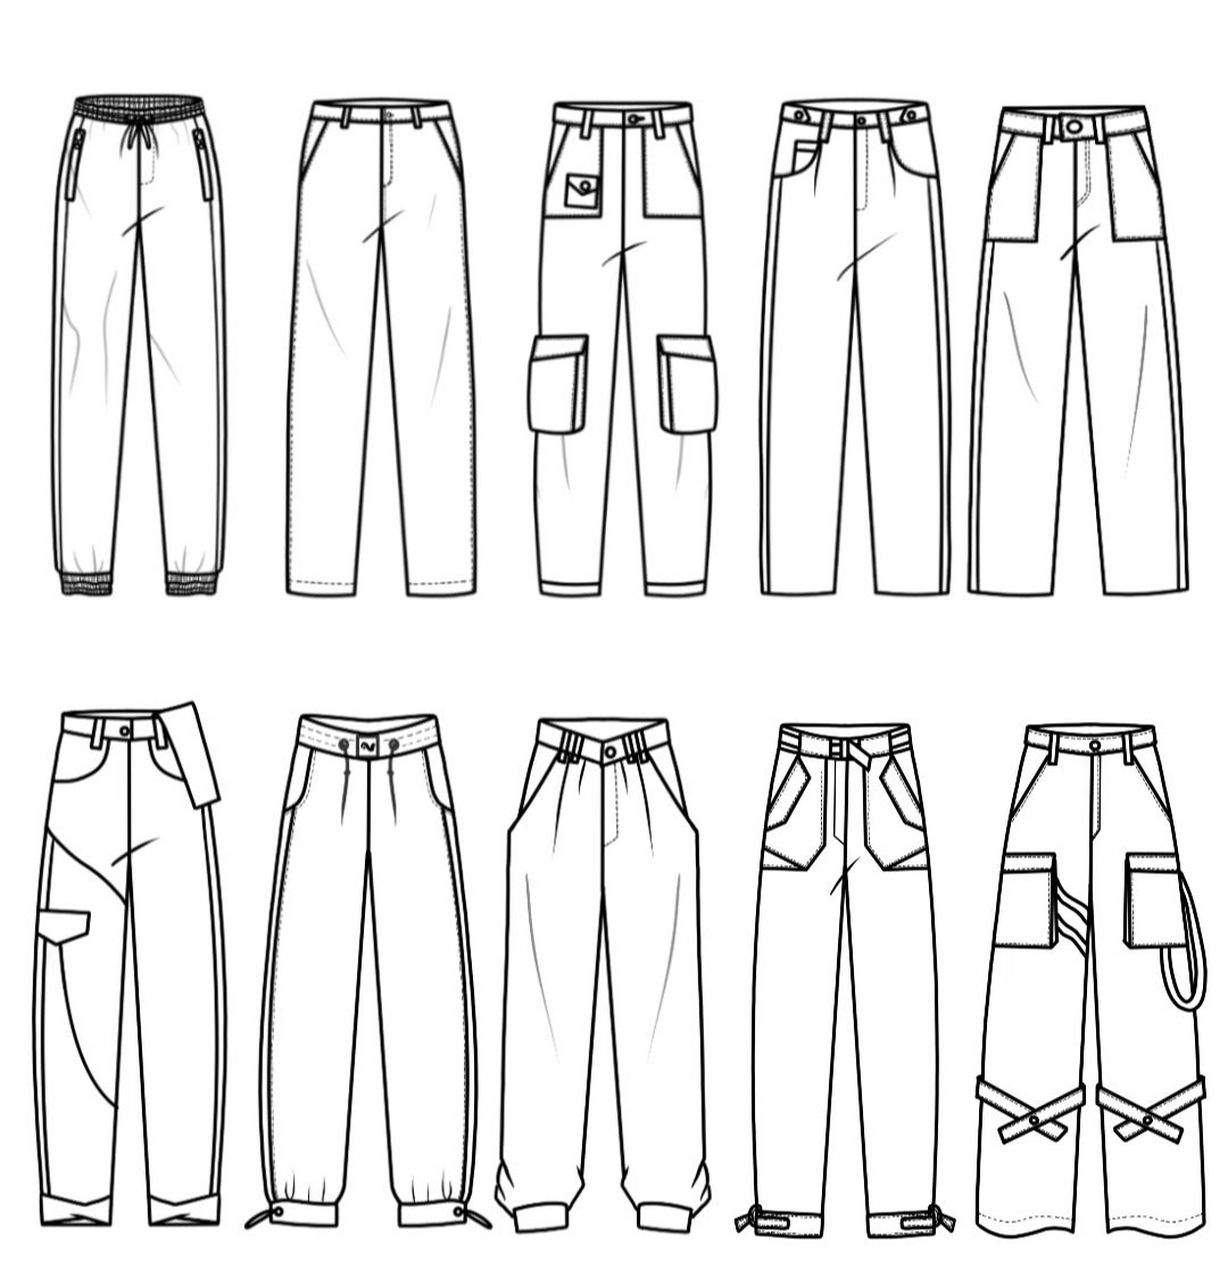 10款男裤子款式图 95分享简单易画的裤子款式图72157215